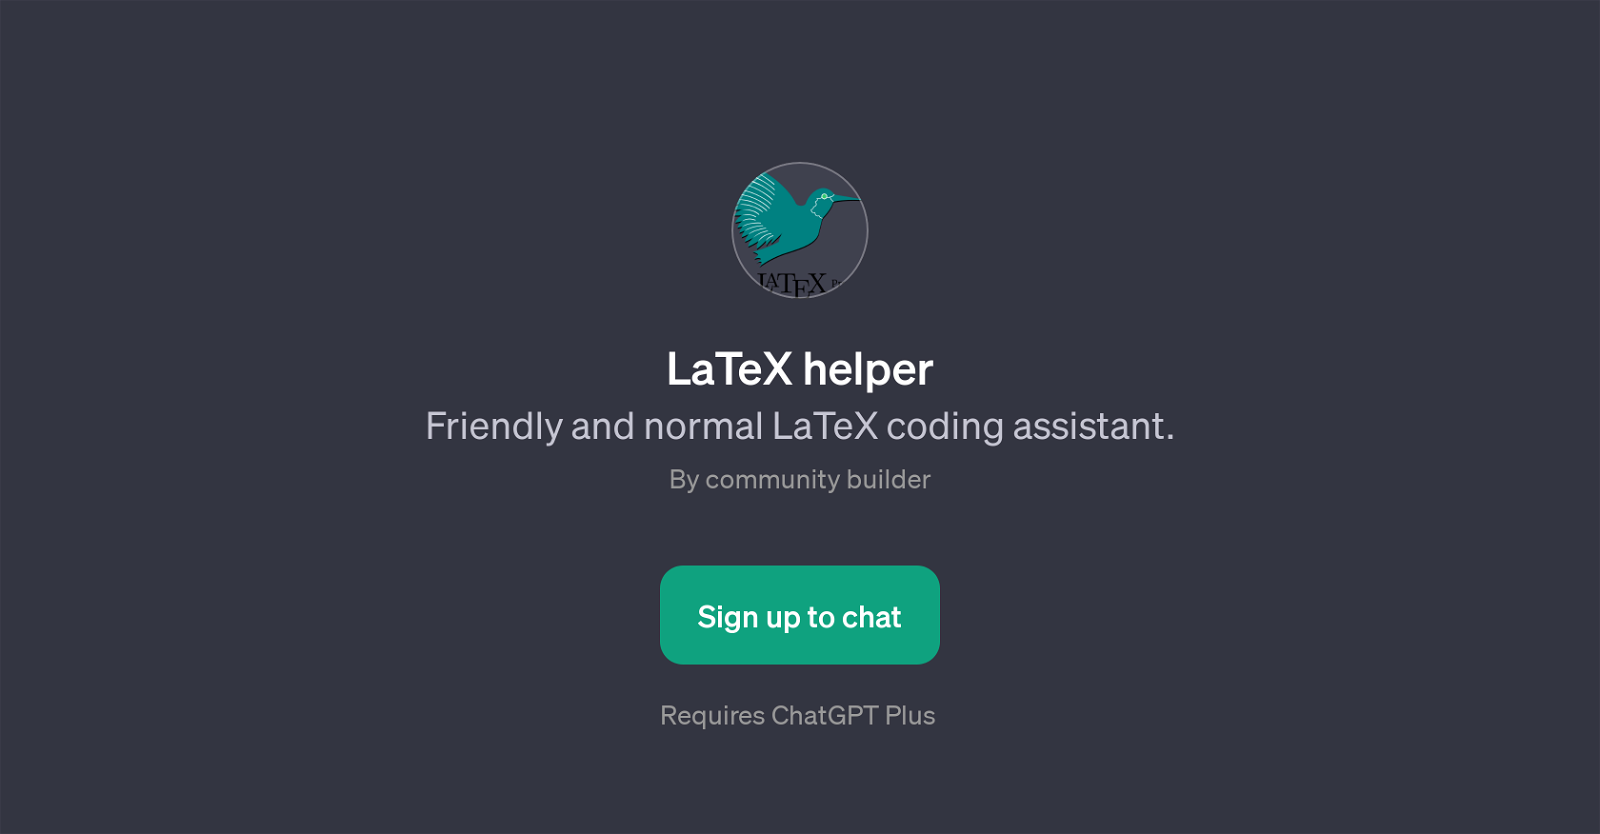 LaTeX helper website